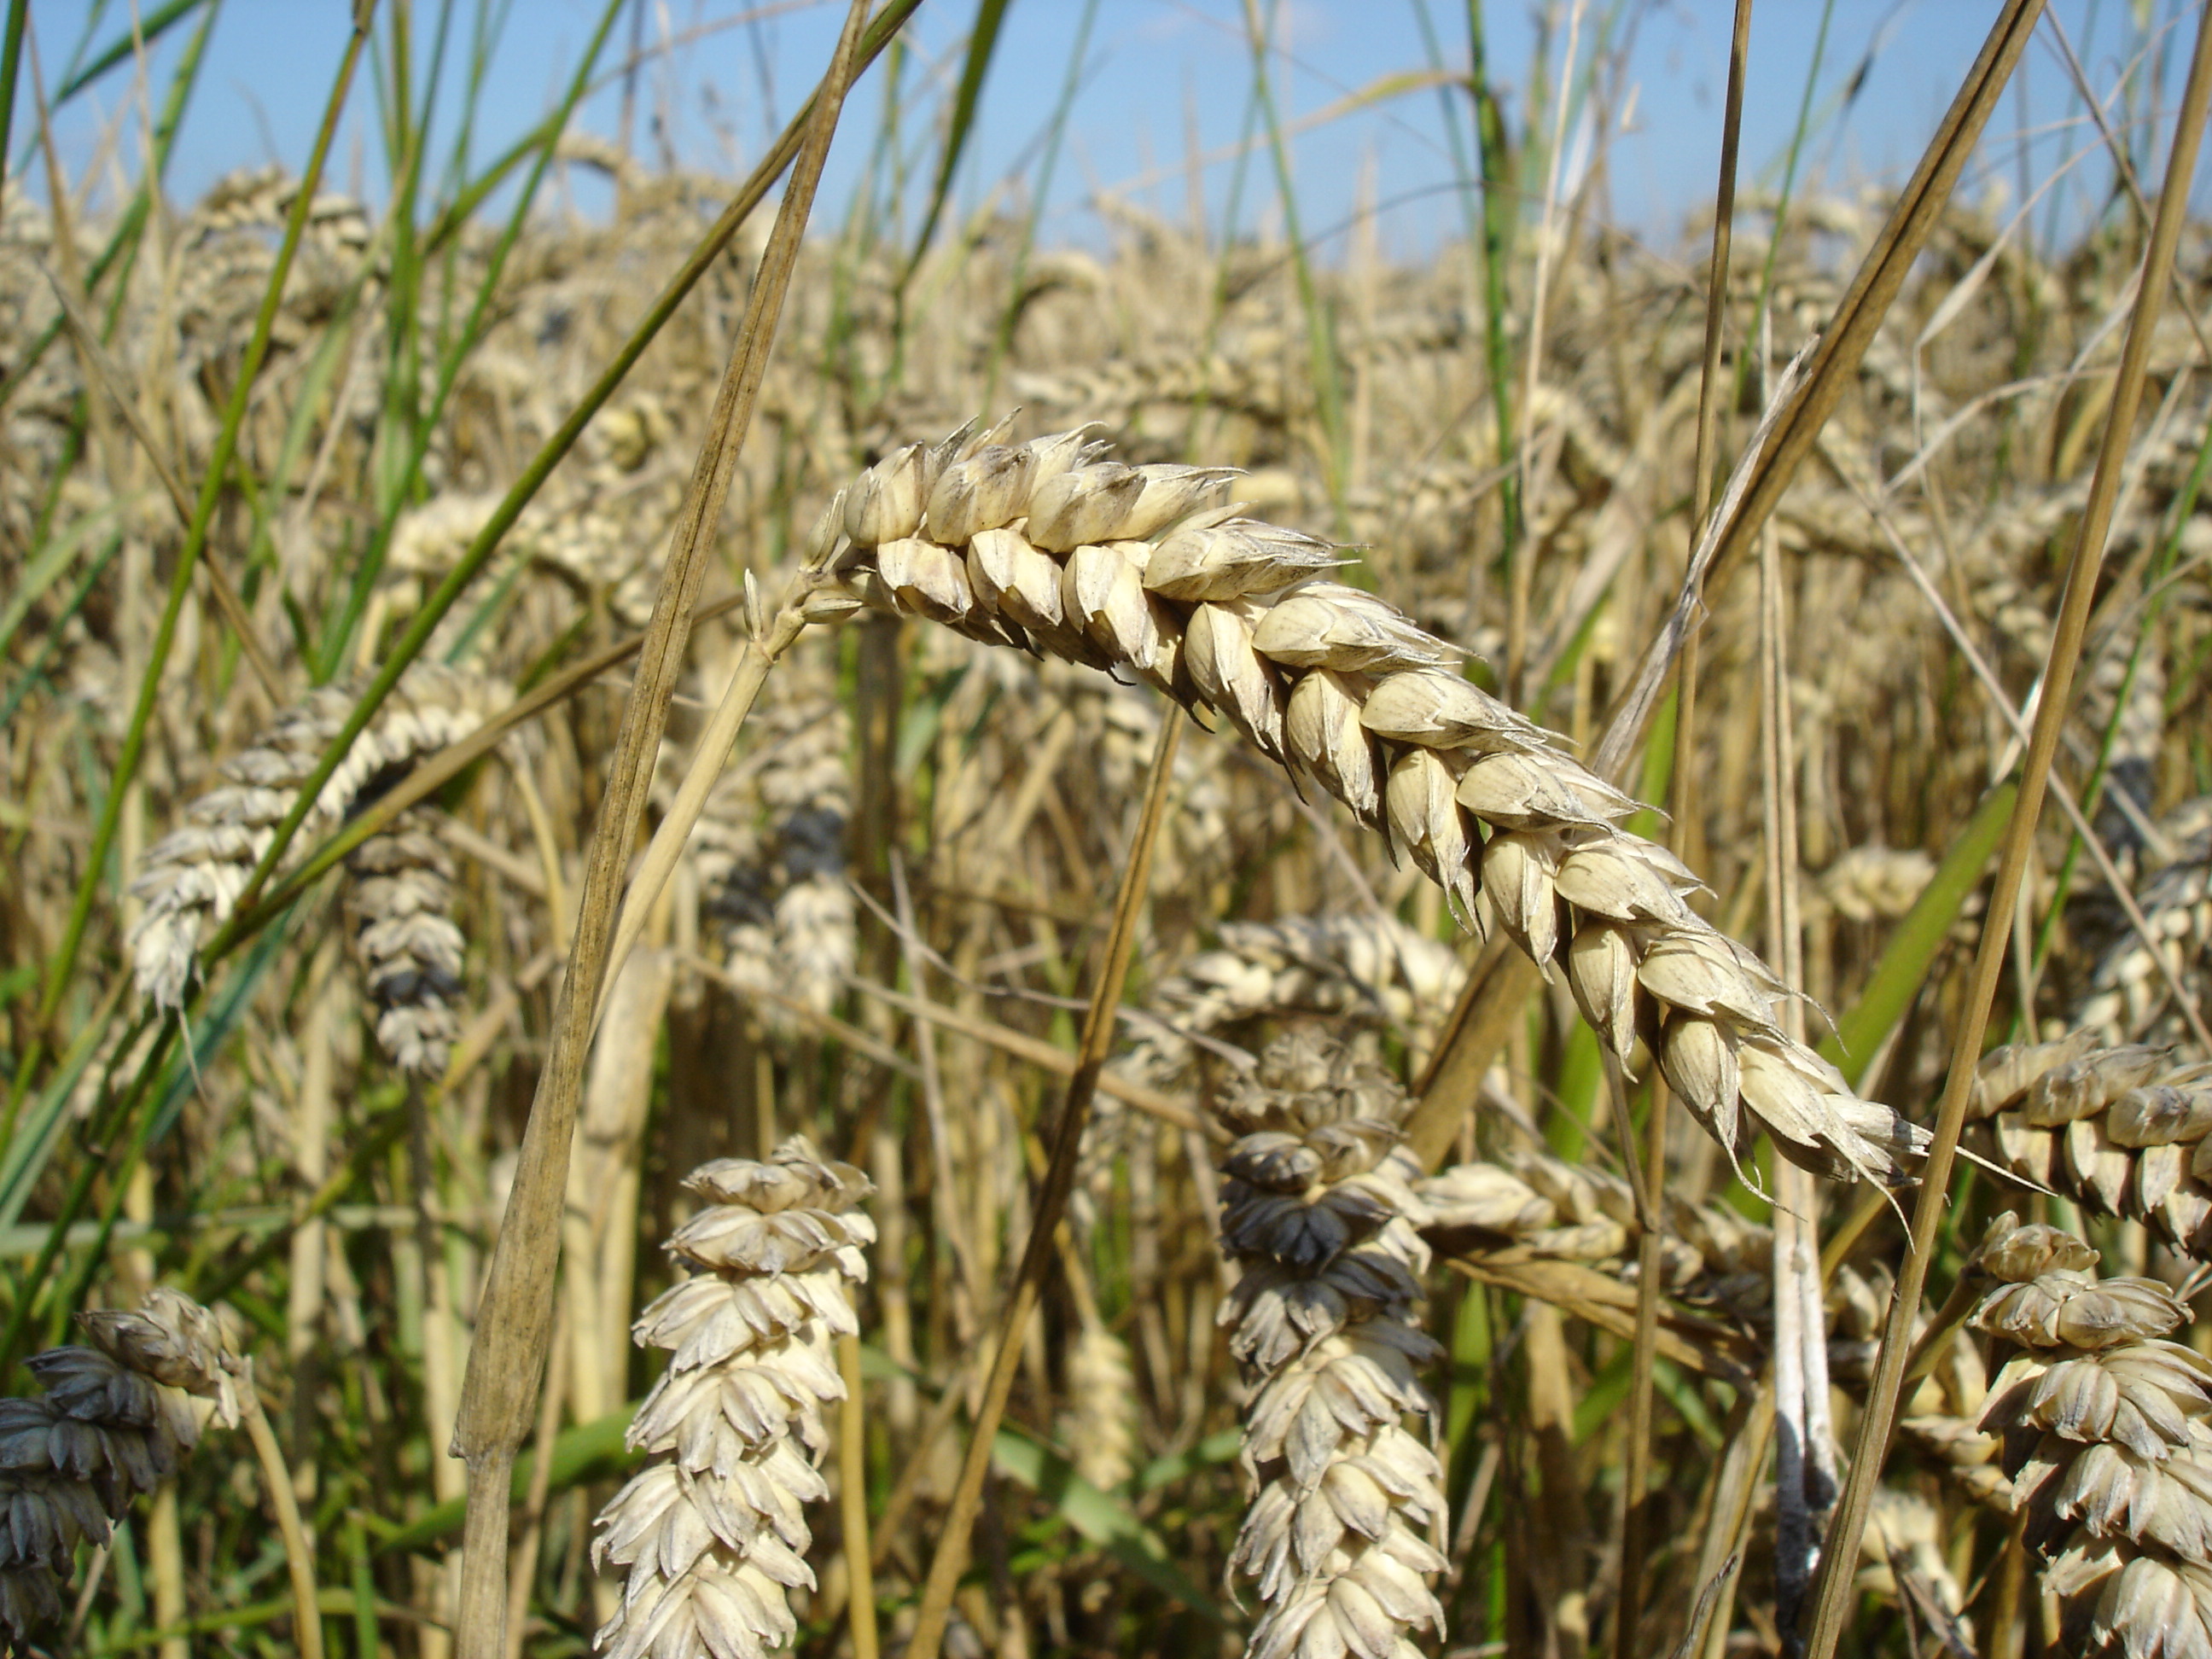 File:Wheat close-up.JPG - Wikimedia Commons